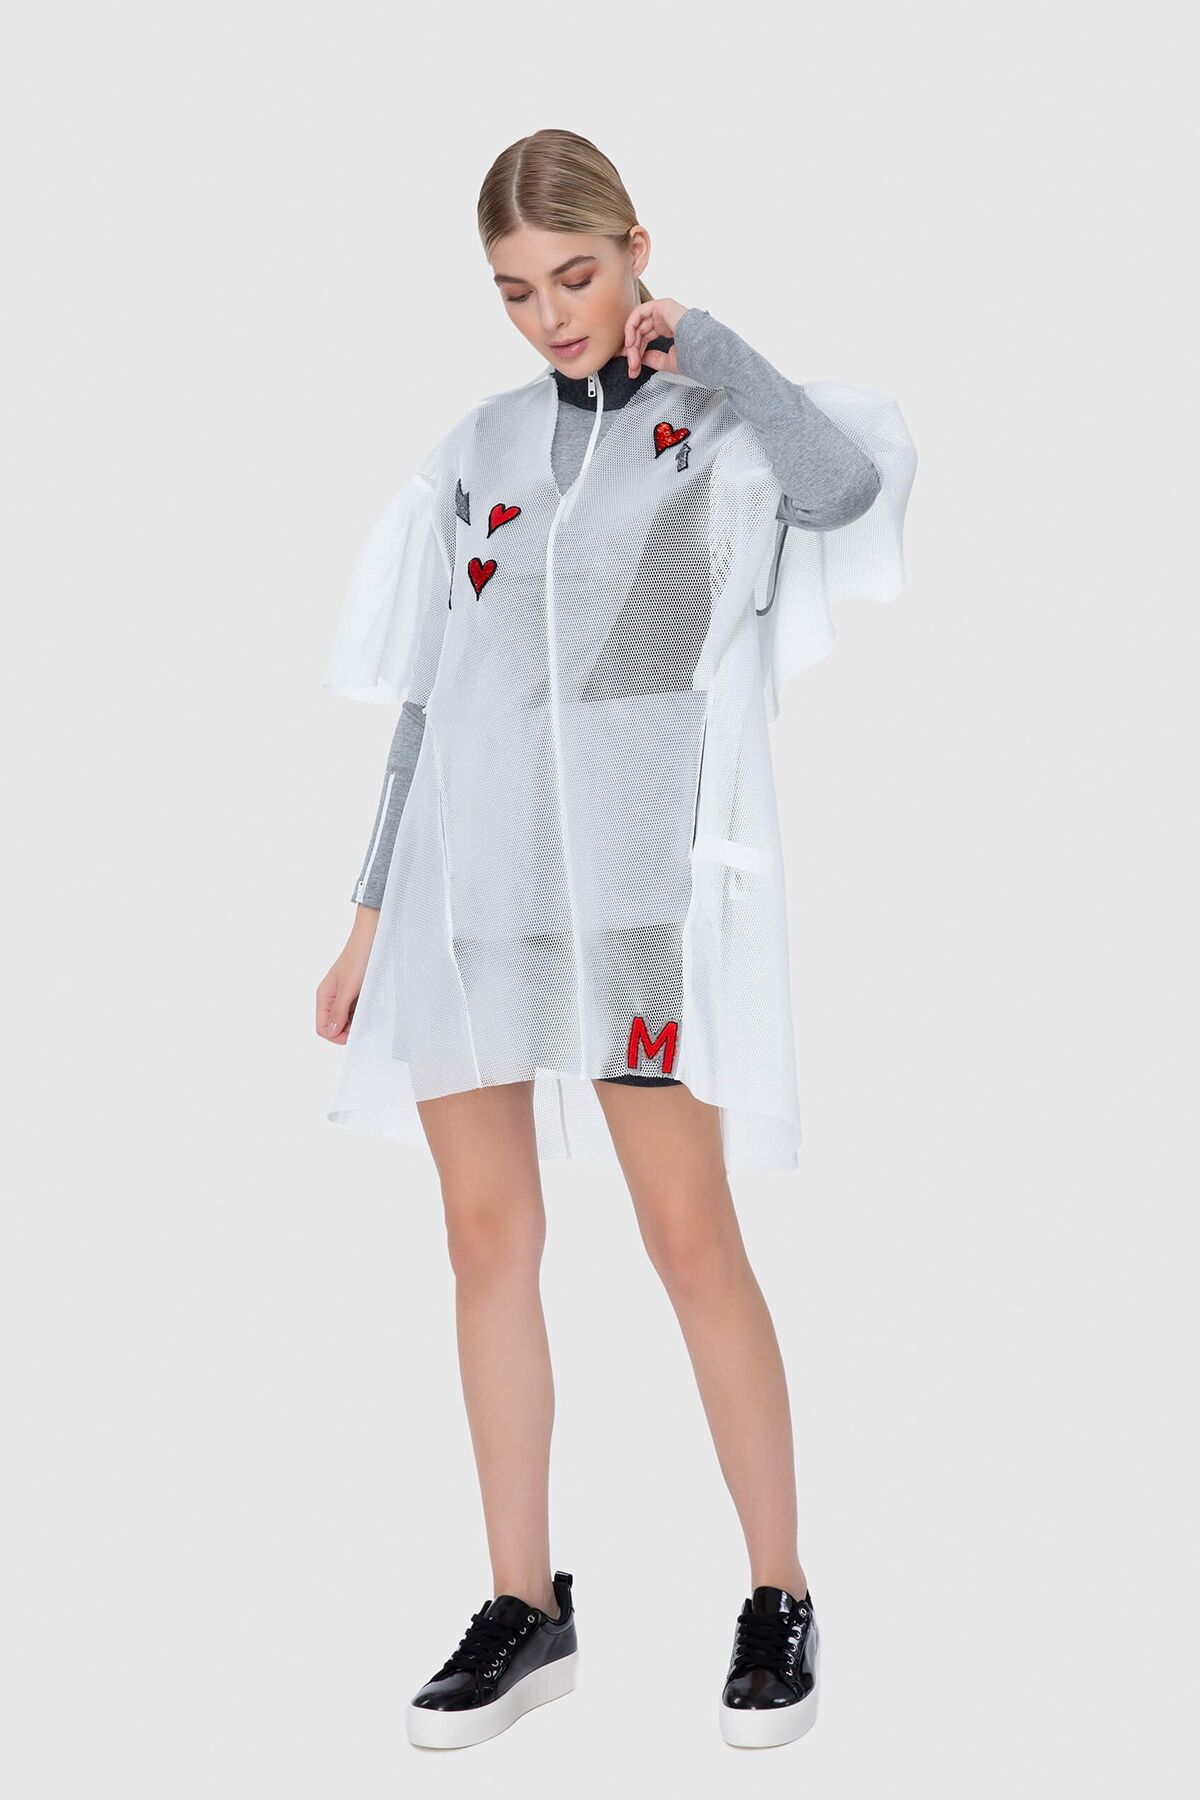 MANI MANI - Seyyar File Elbise Detaylı Örme Mini Elbise